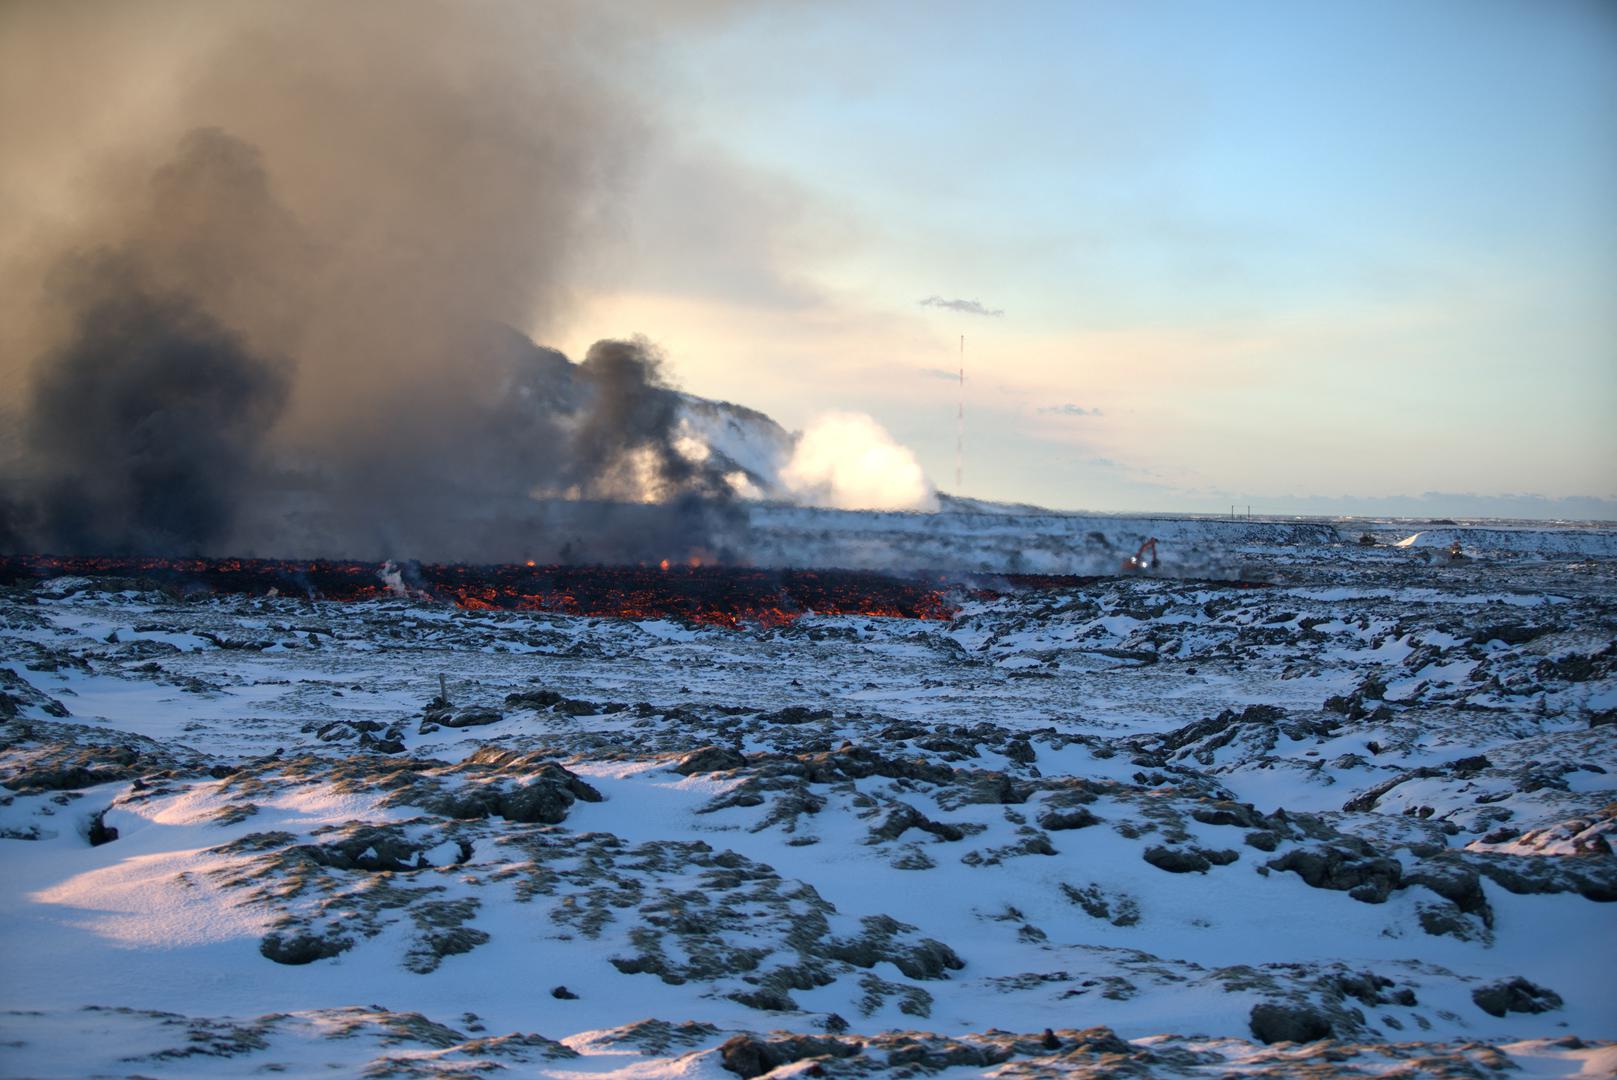 Satelitski snimci koja je objavio Islandski meteorološki zavod pokazuju da se lava razlila na oko 4,5 kilometara zapadno od erupcije, tek 500 metara do poznatog geotermalnog lječilišta Plava laguna.